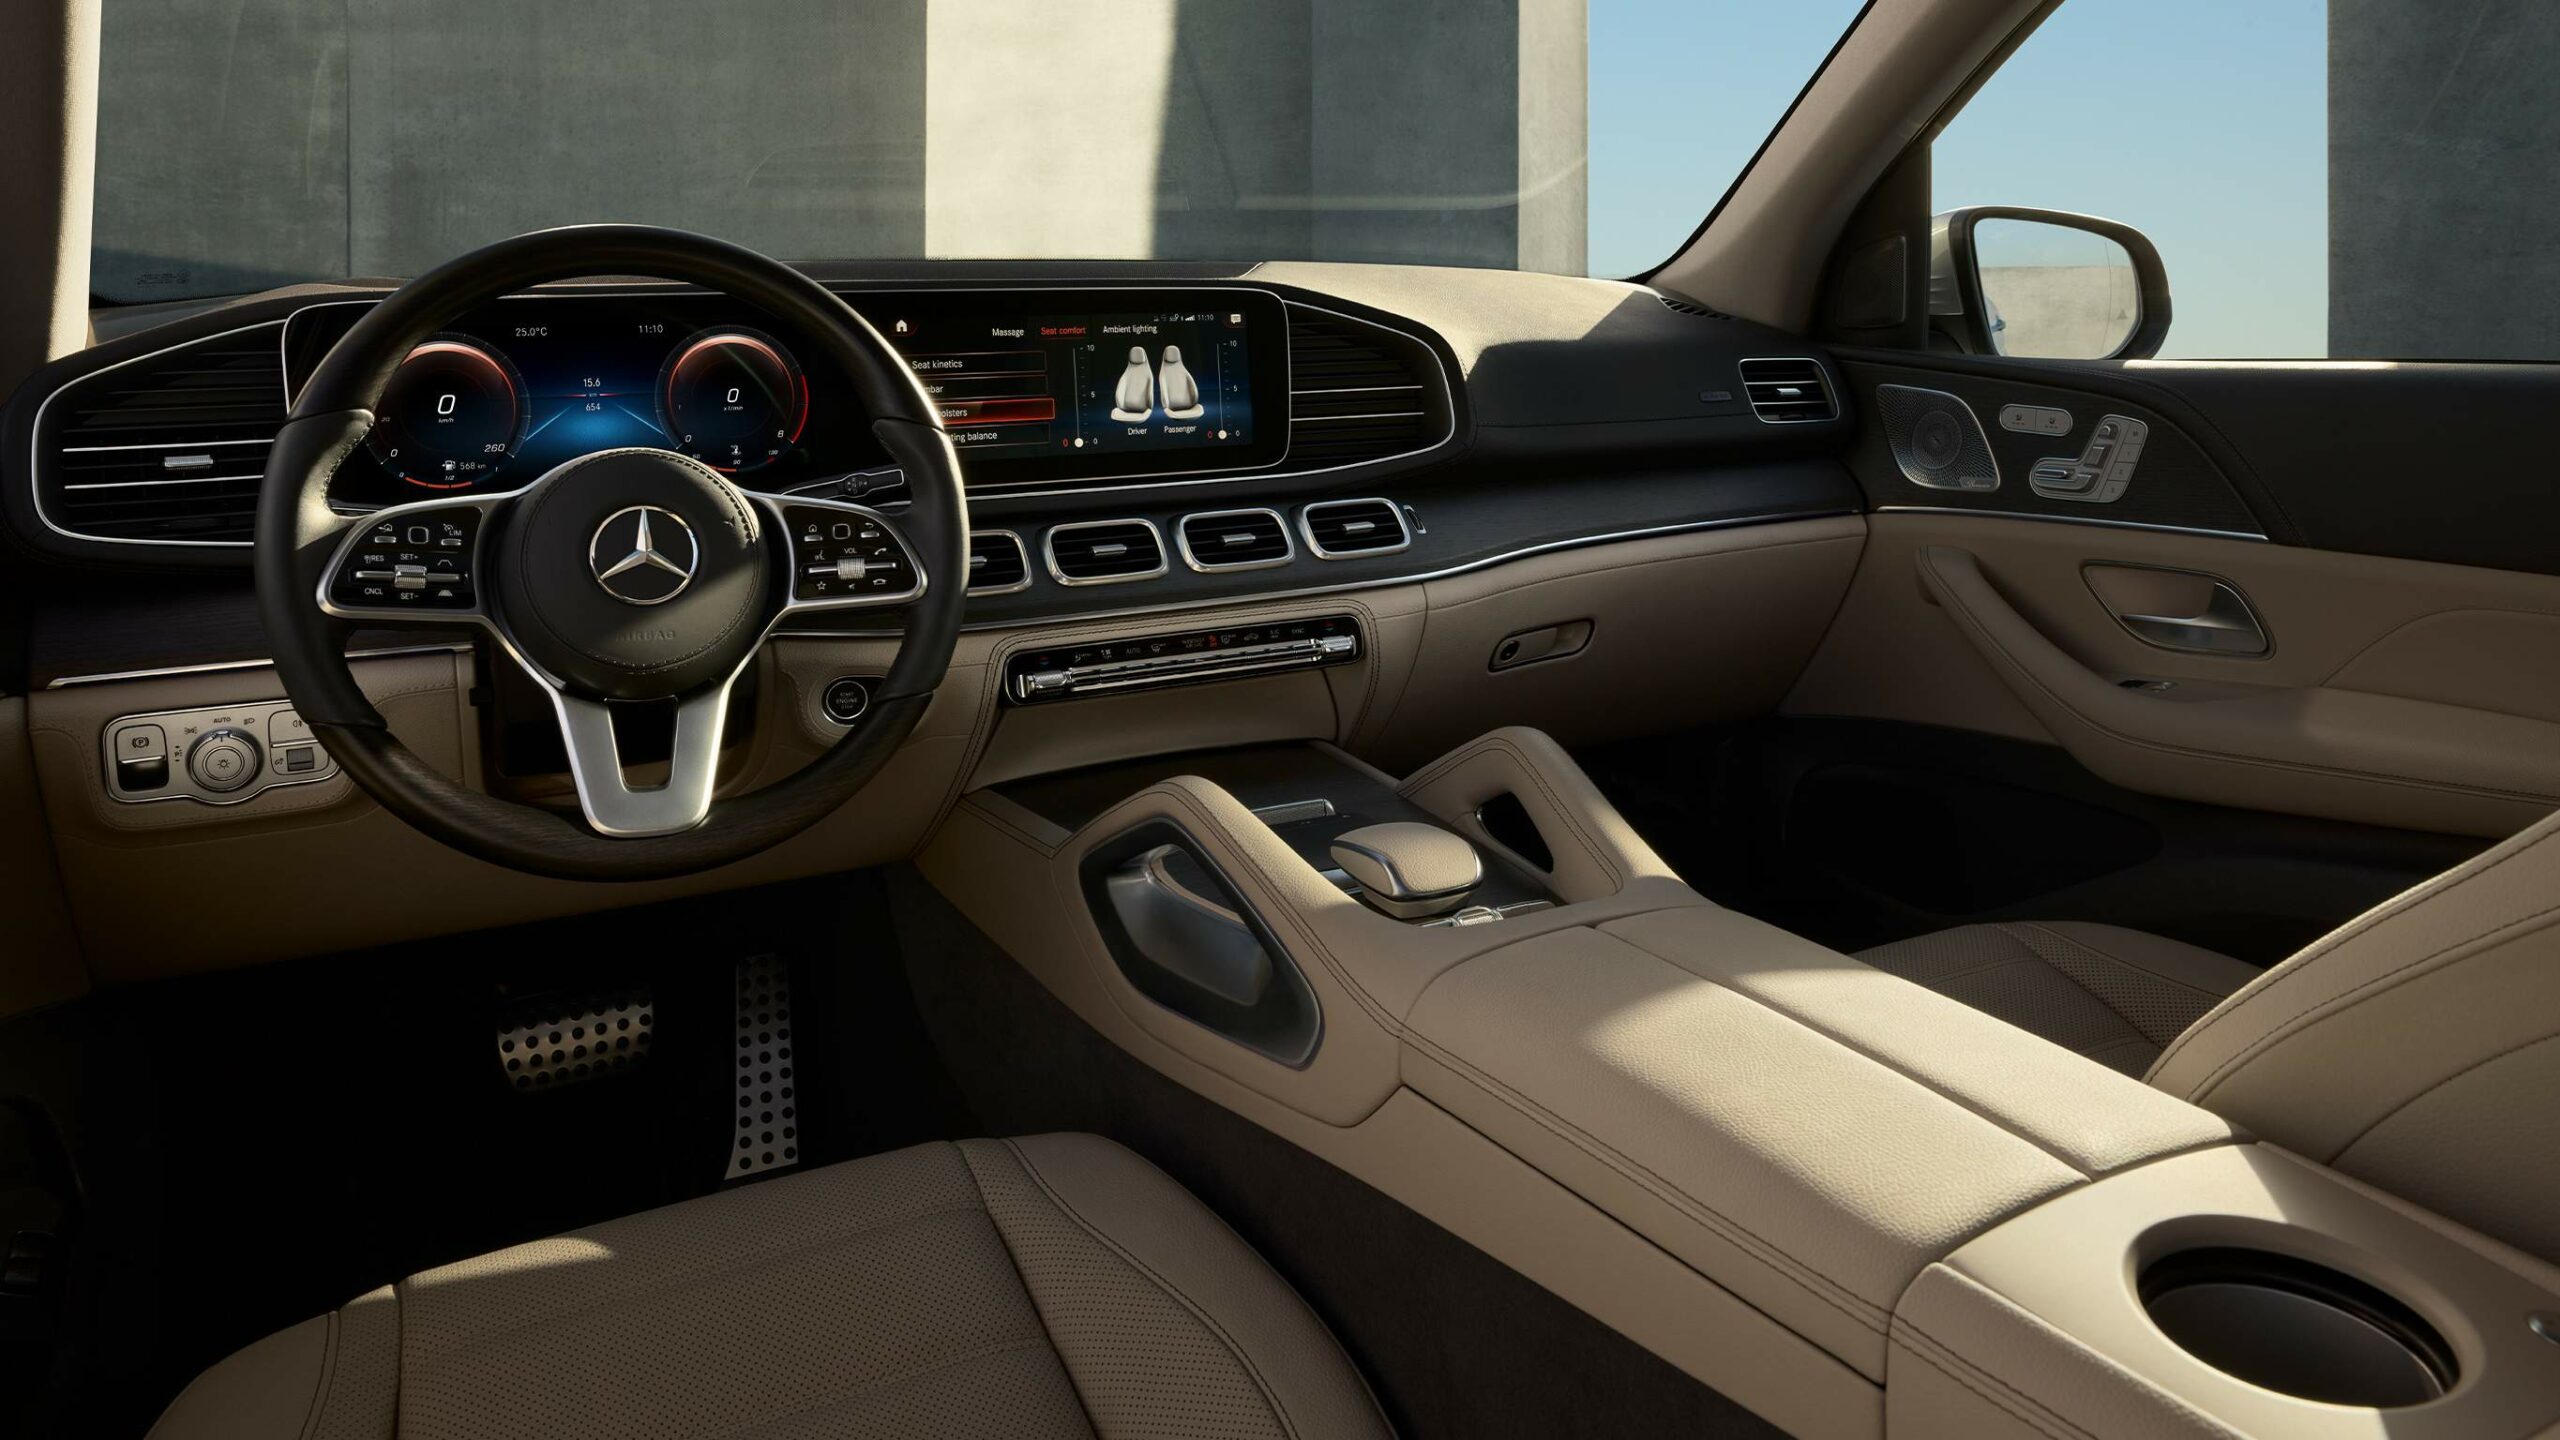 Habitaculo moderno e innovador dentro de la GLS SUV de Mercedes-Benz